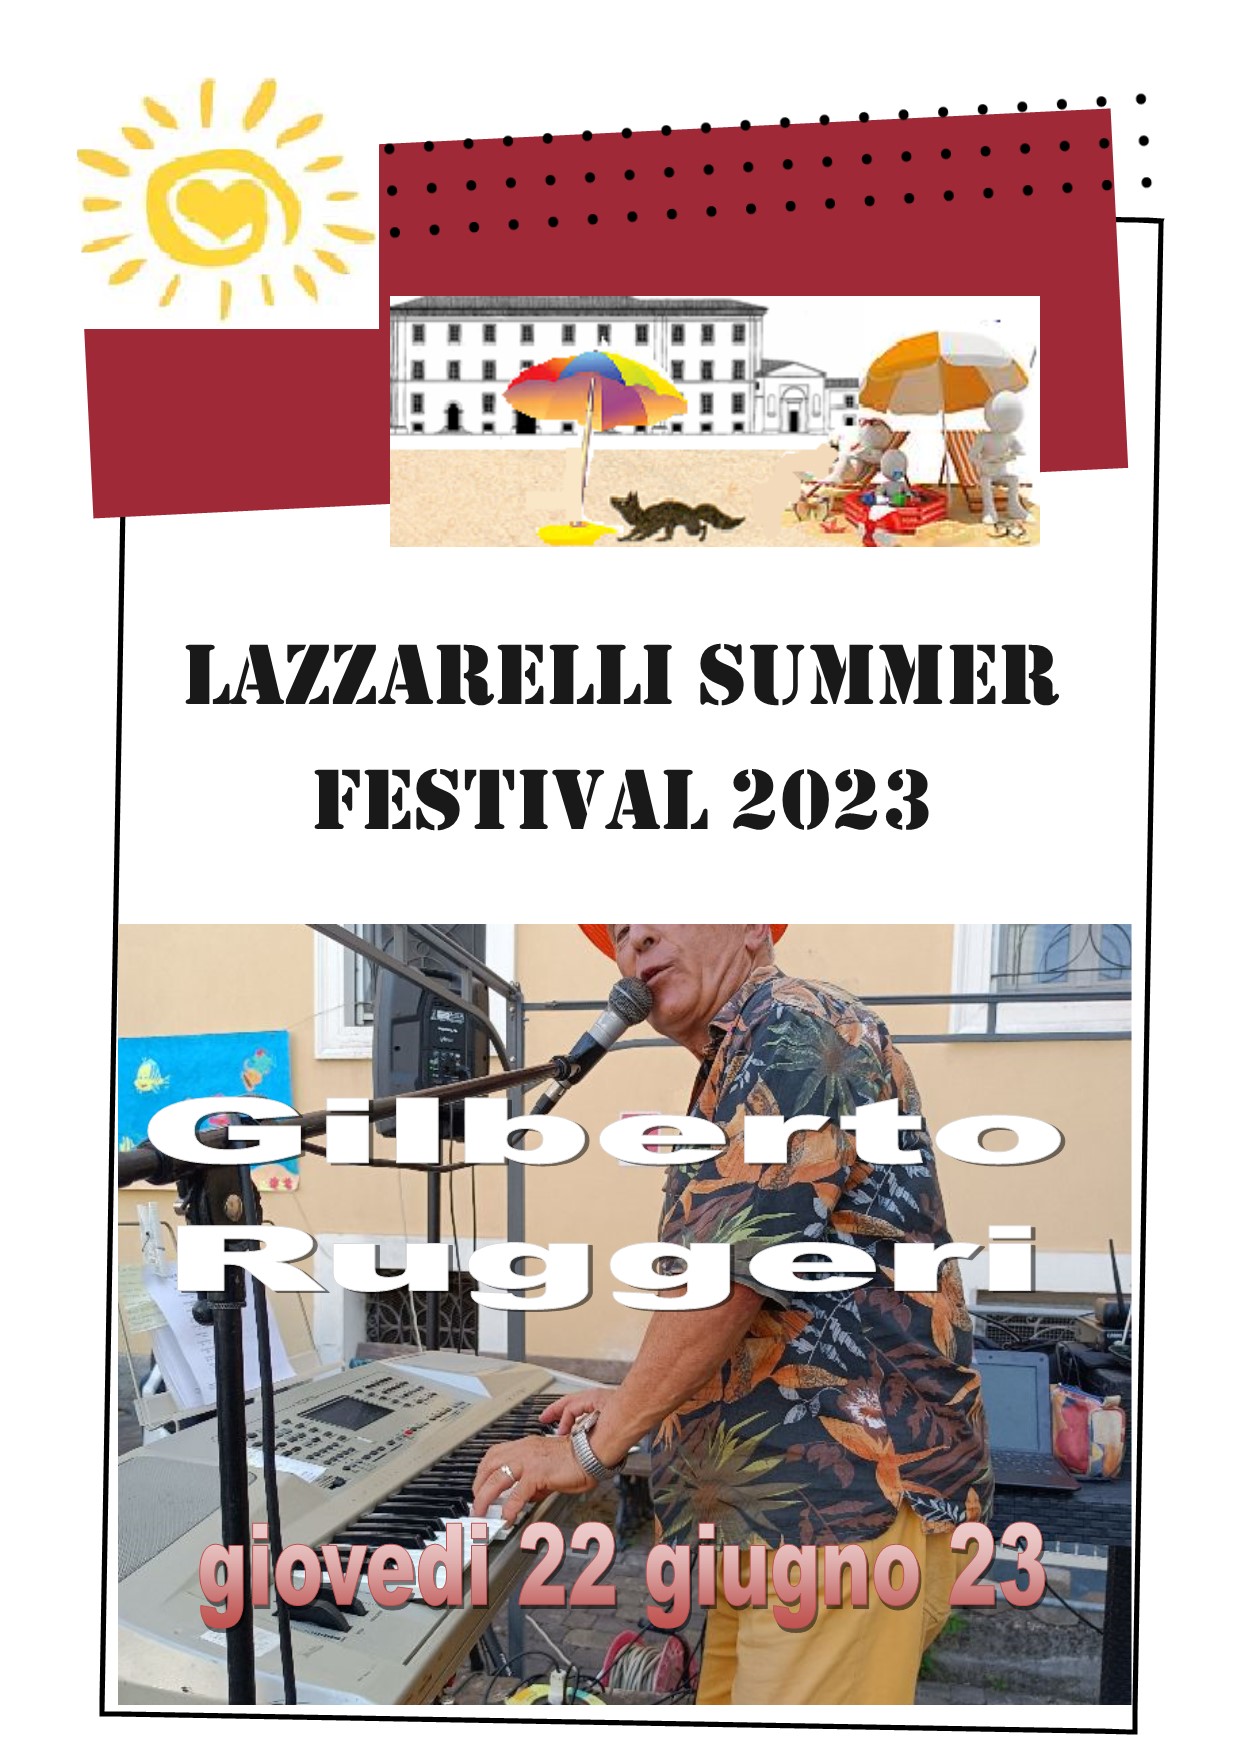 LAZZARELLI SUMMER FESTIVAL 2023